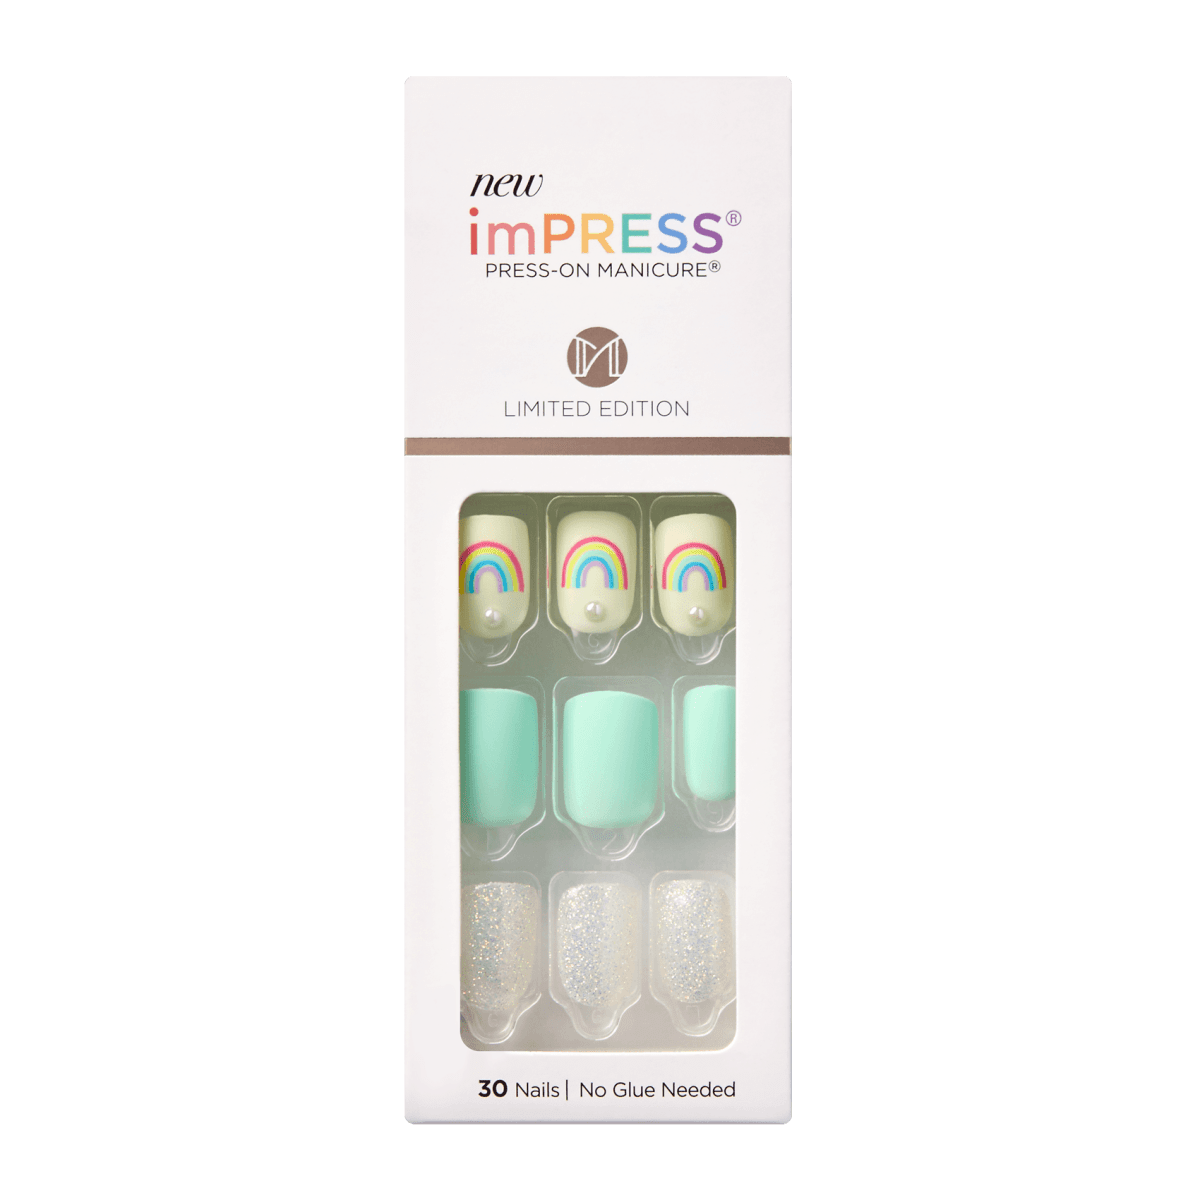 imPRESS Press-On Manicure - Summer Fever